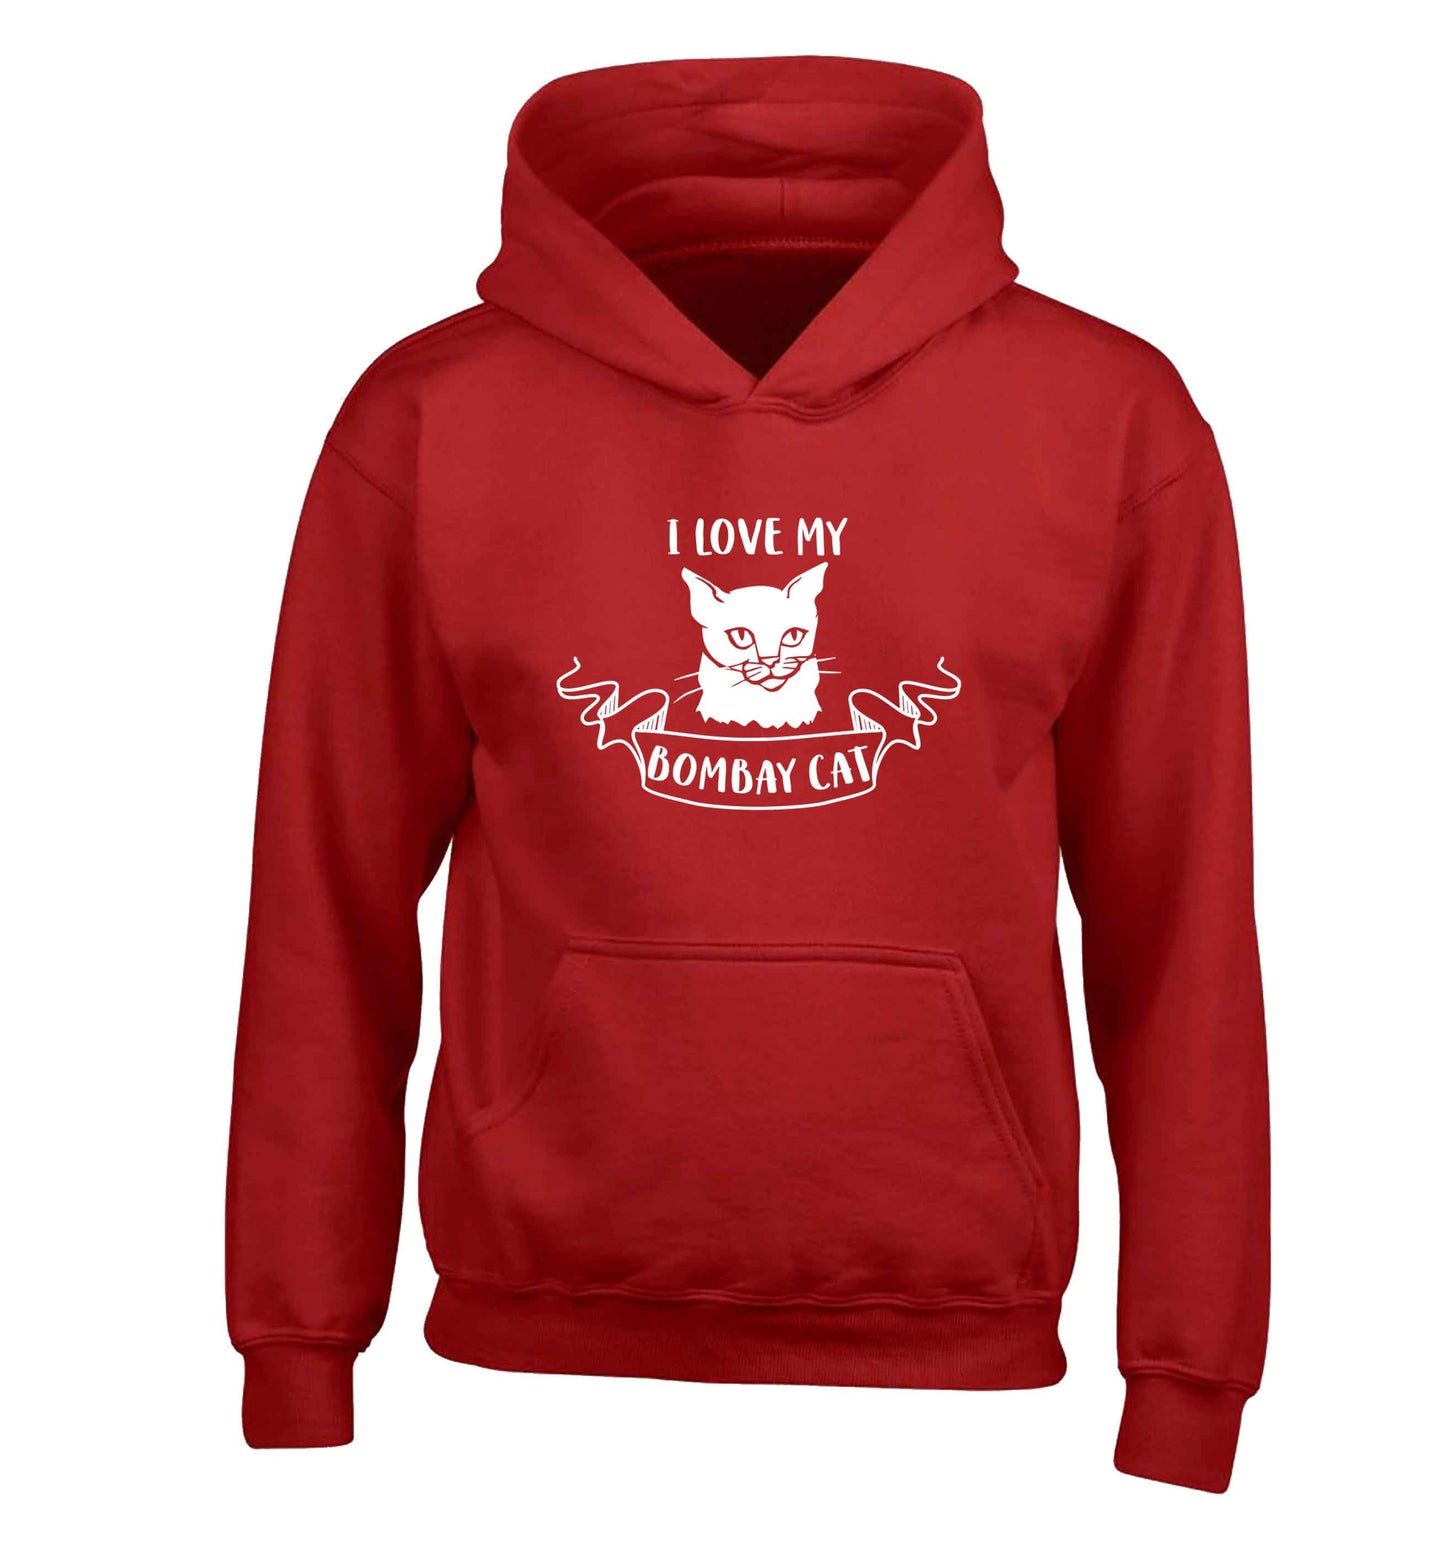 I love my bombay cat children's red hoodie 12-13 Years